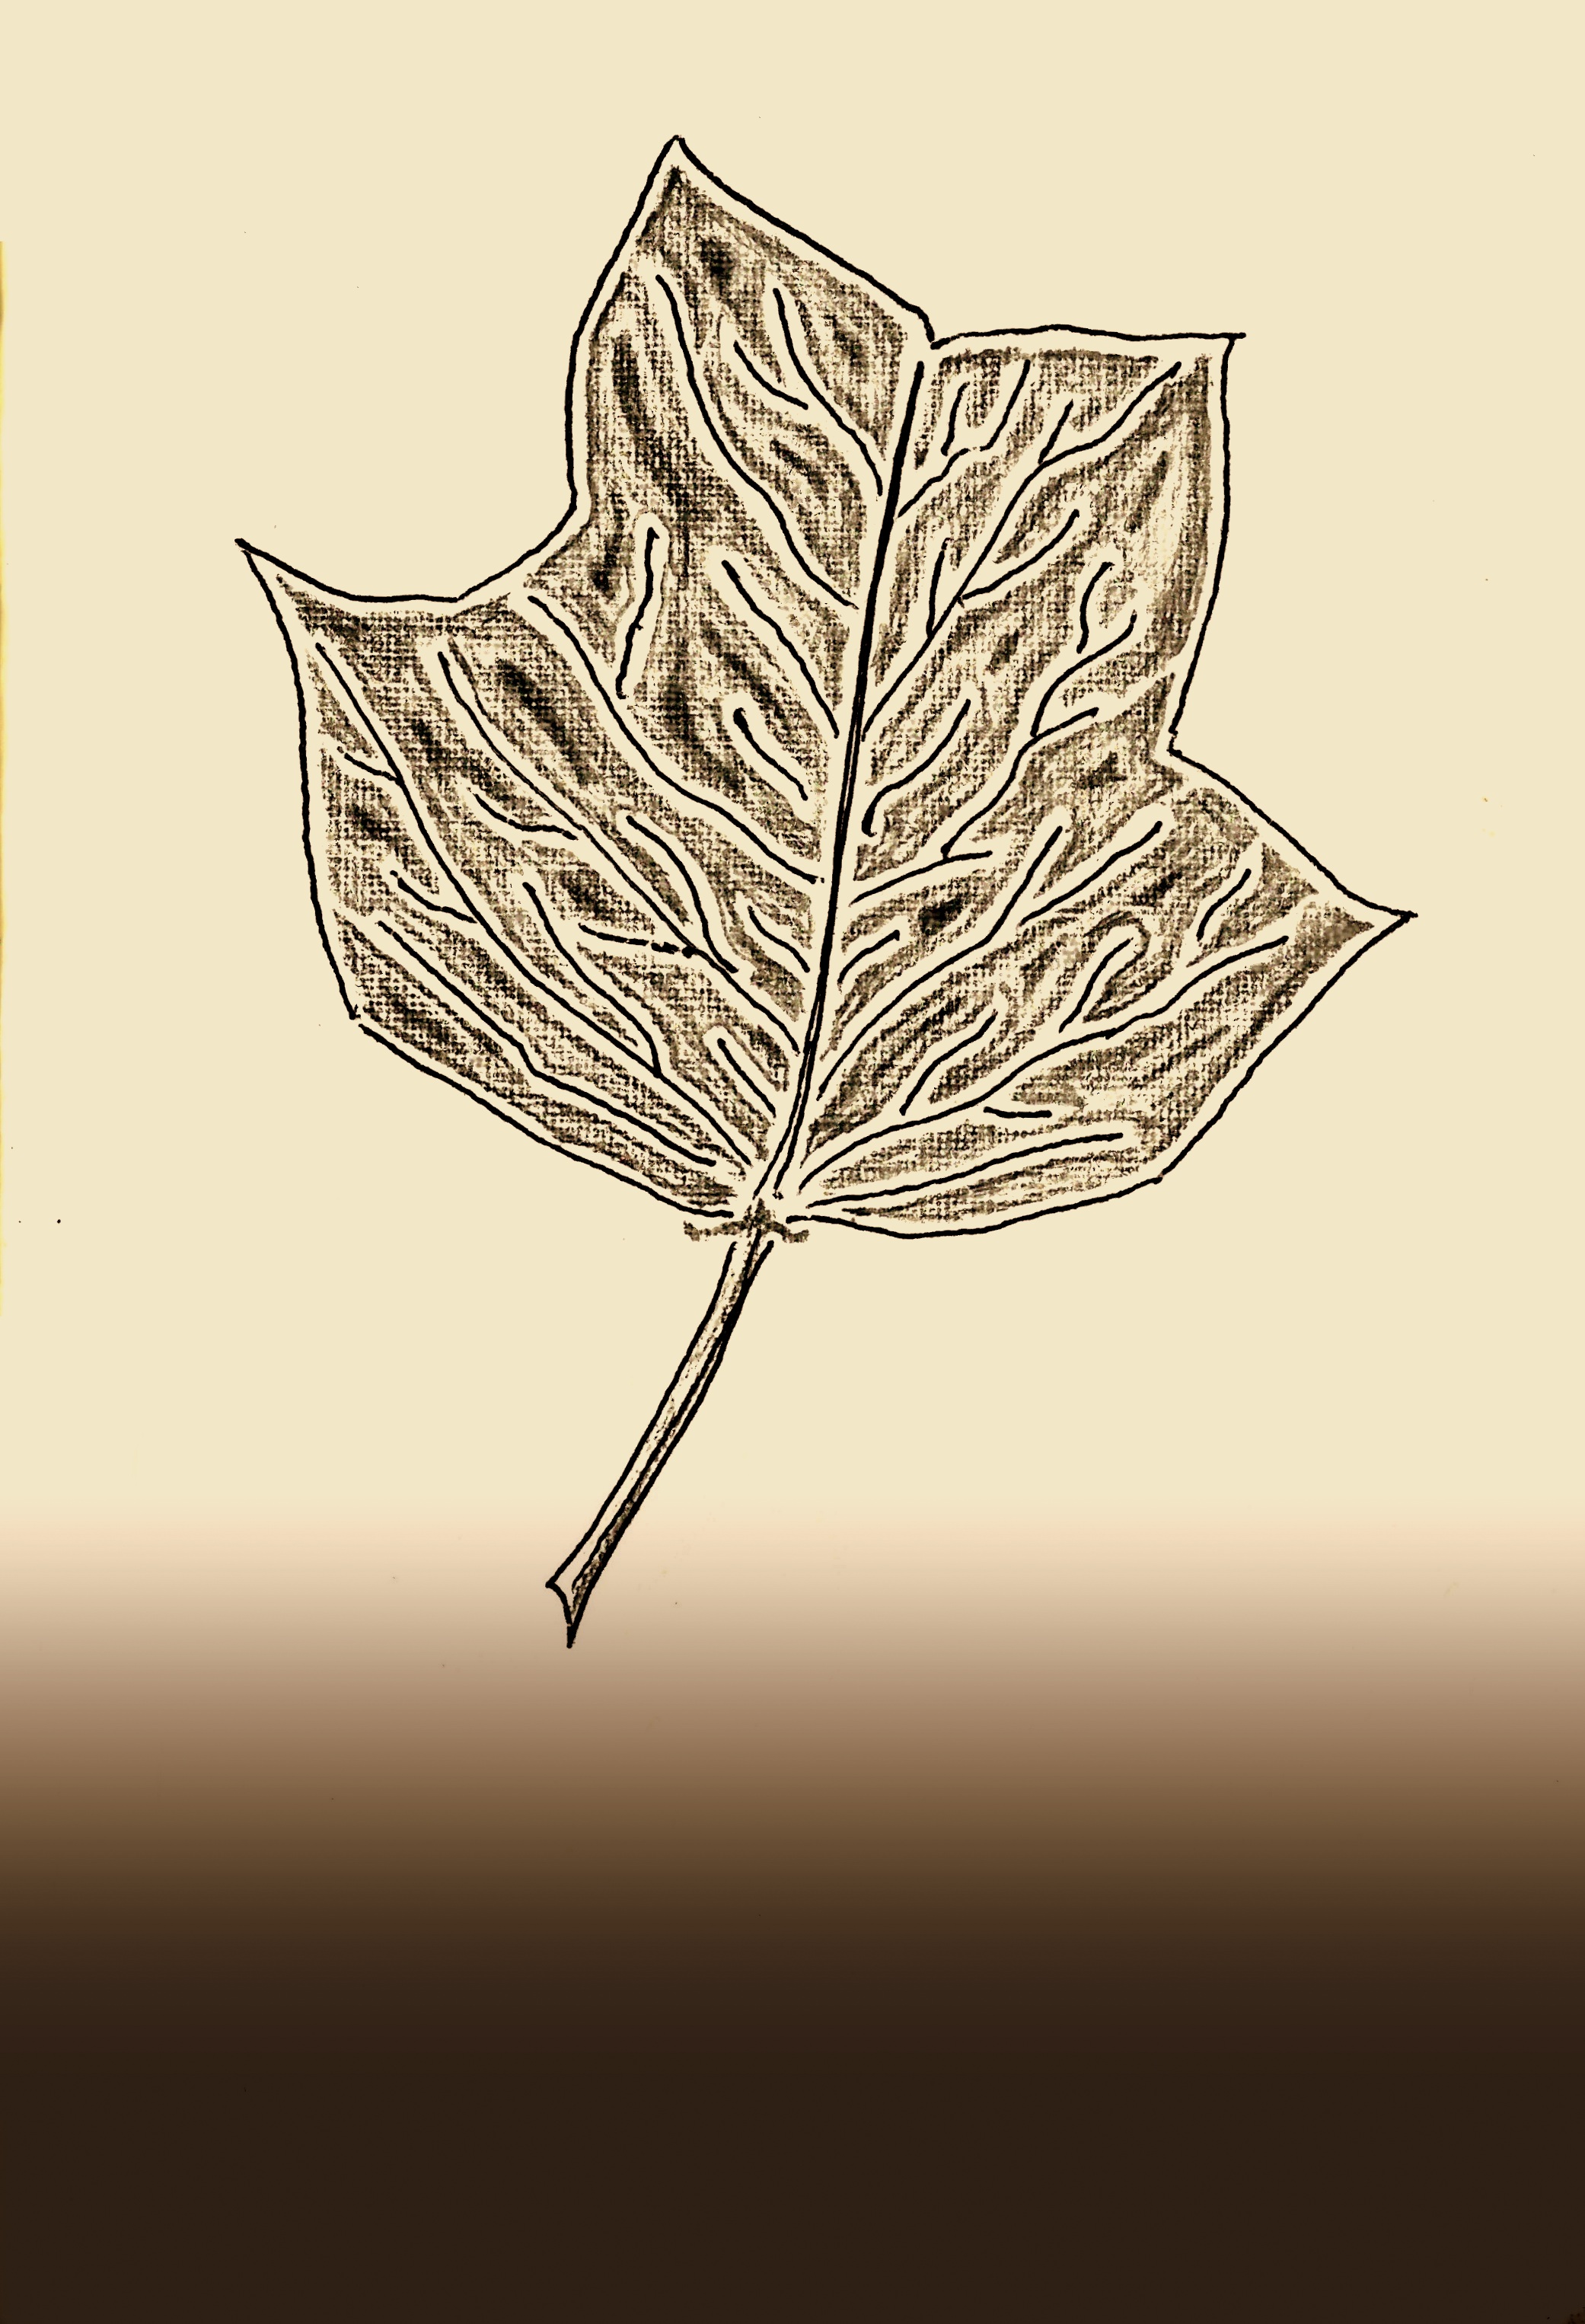 tulip tree leaf